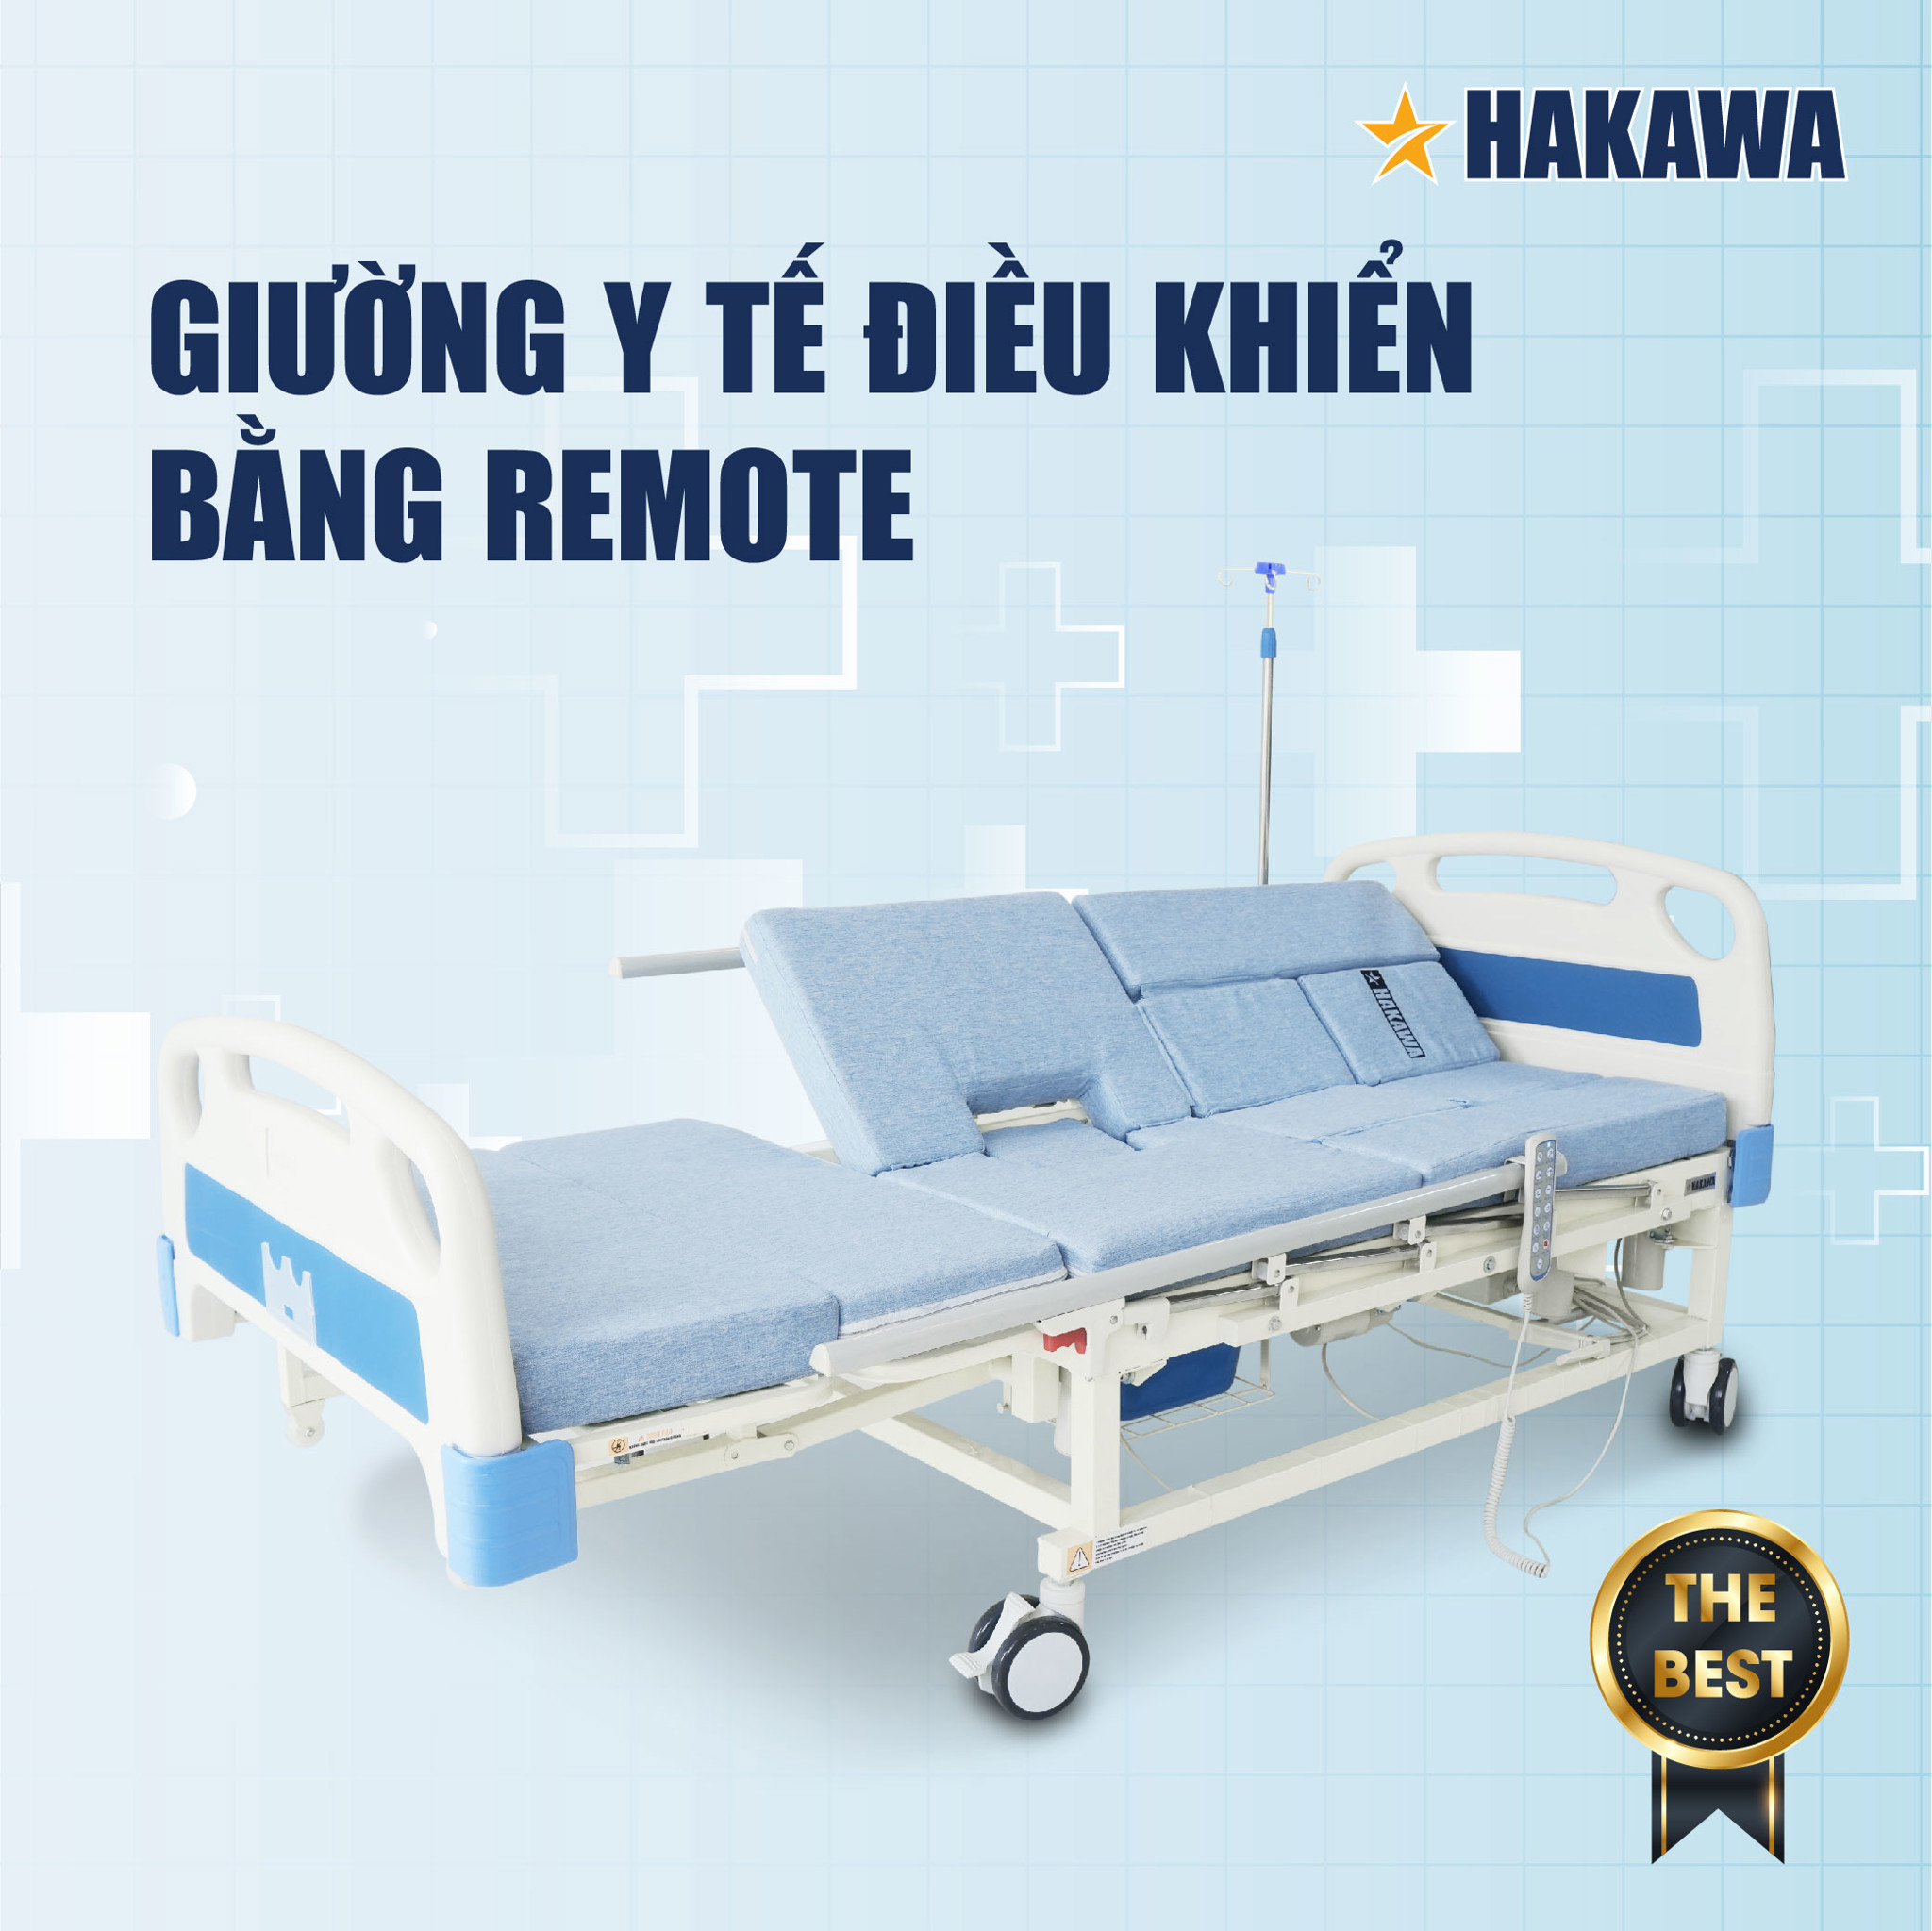 Giường y tế điều khiển bằng remote cao cấp Hakawa HK-D99